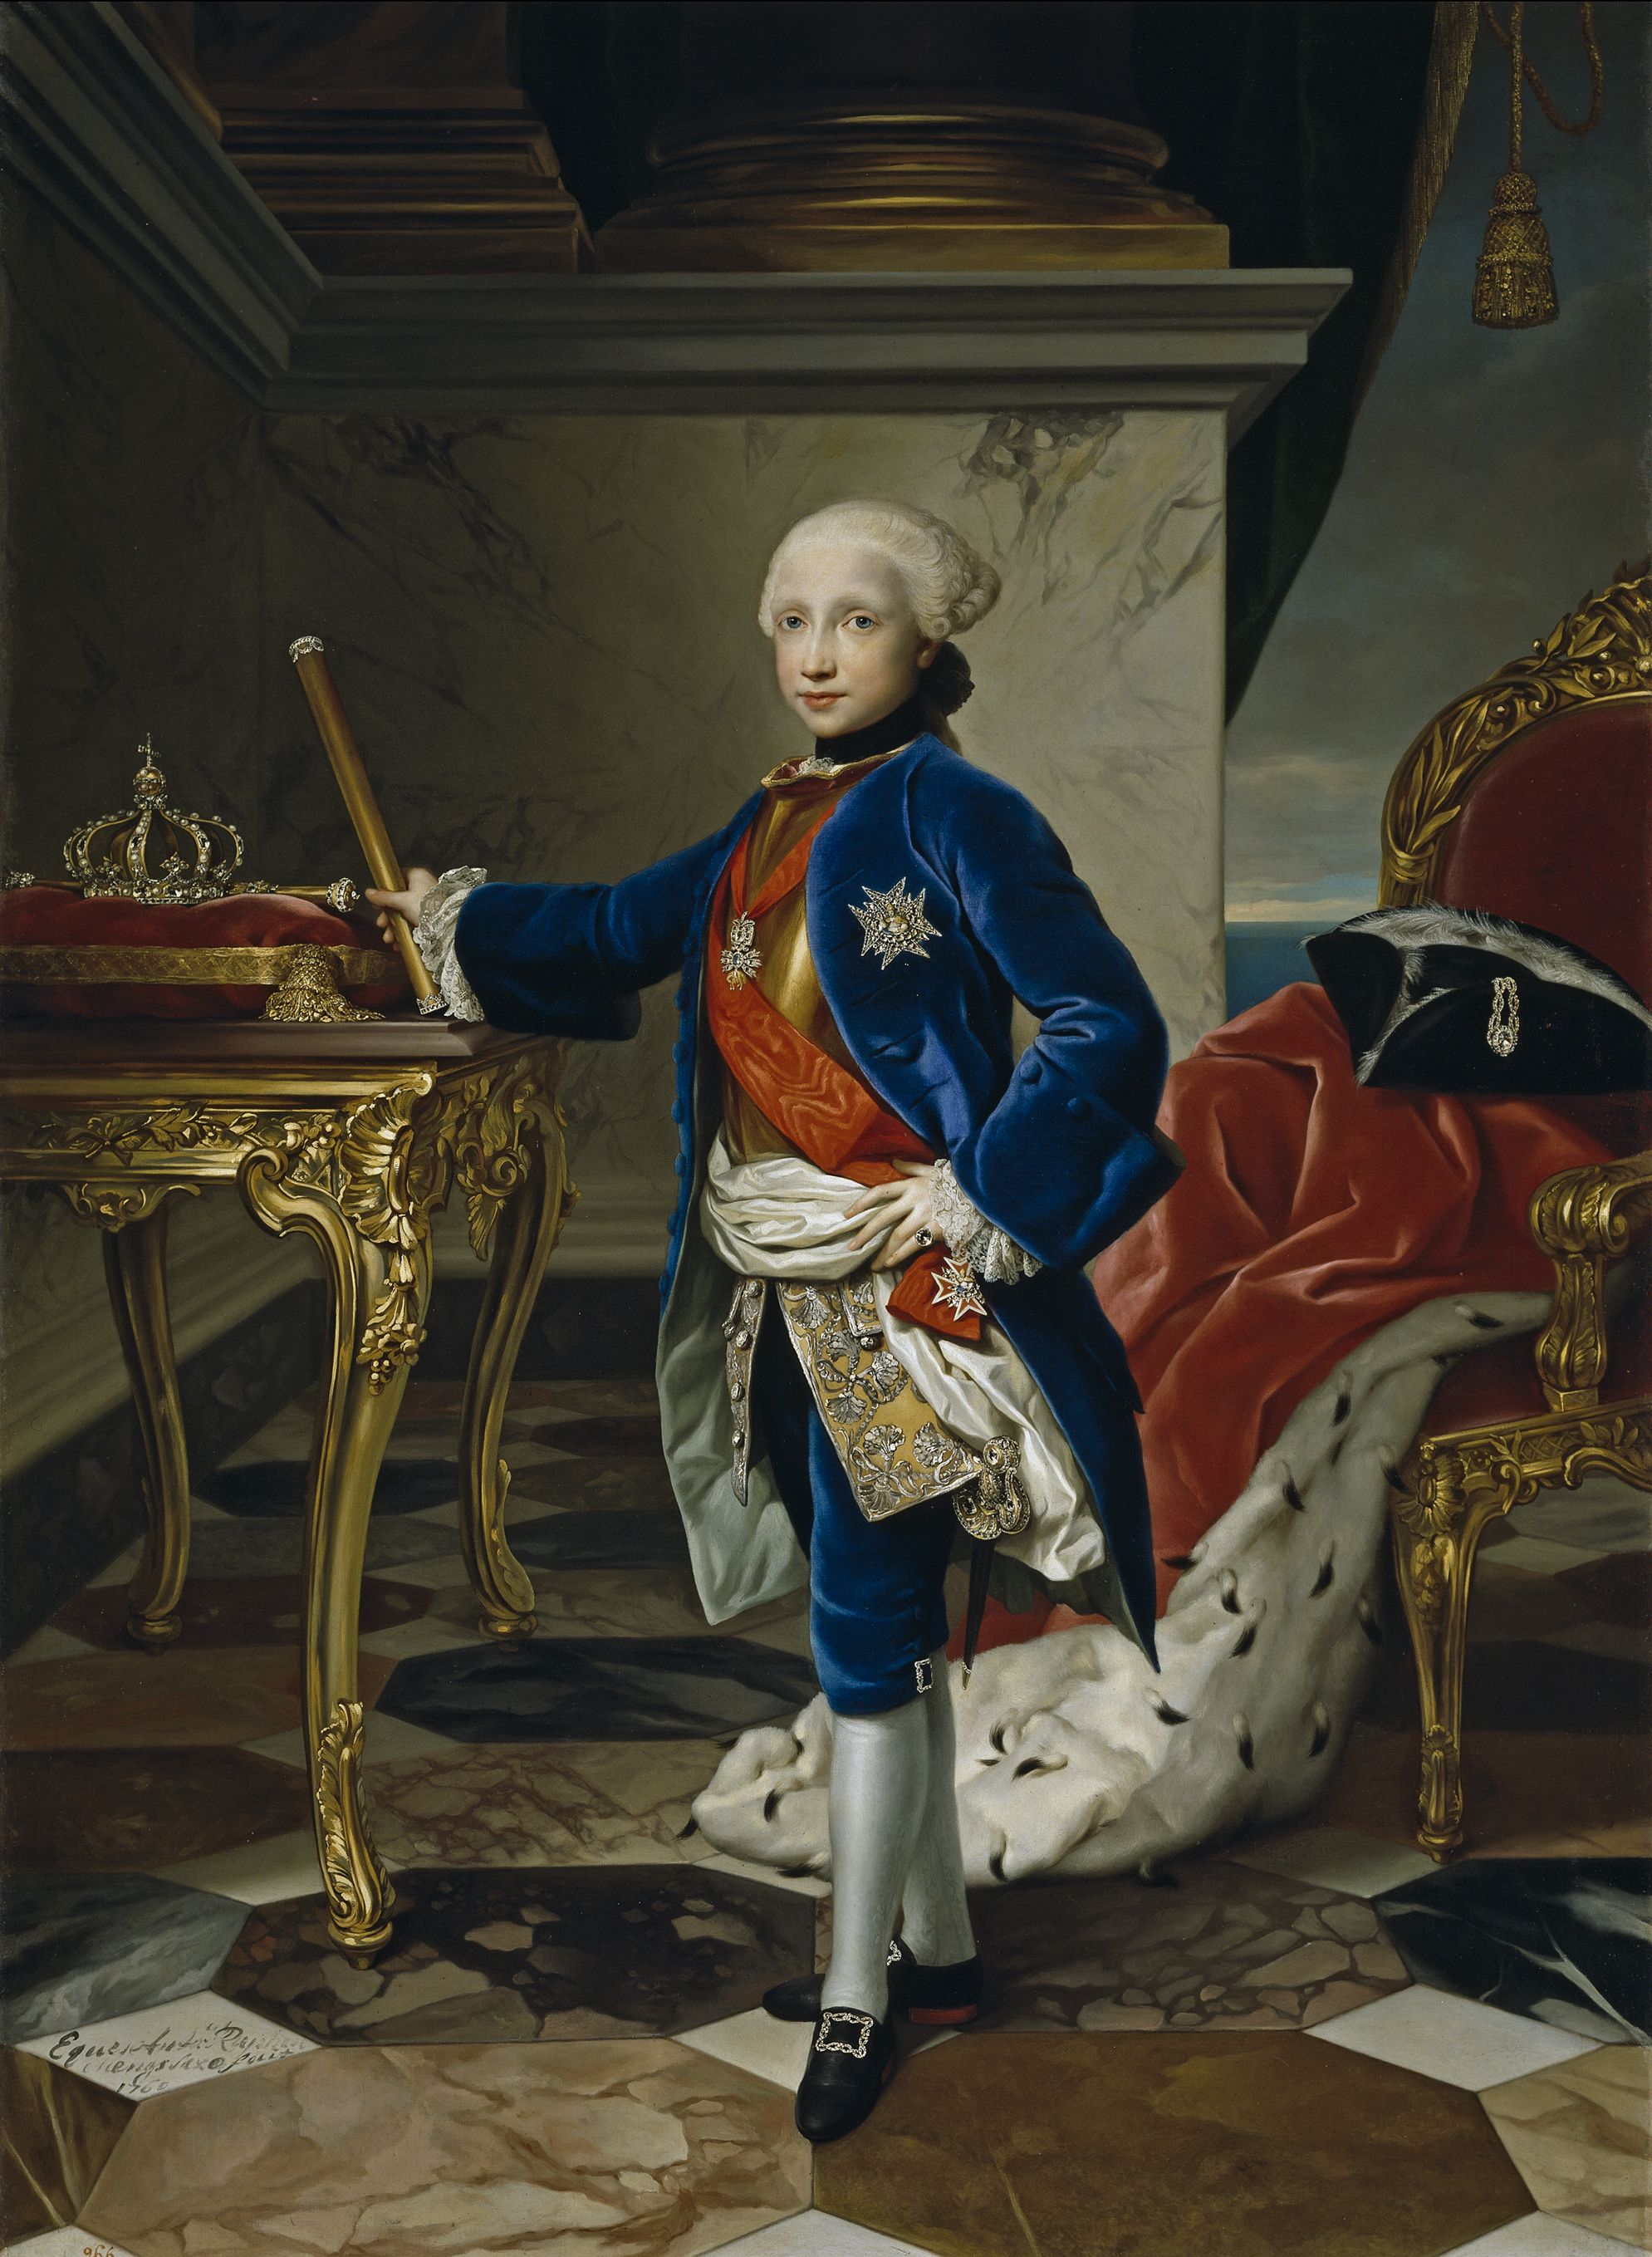 Re Ferdinando all'età di 9 anni
(Anton Raphael Mengs, Public domain, via Wikimedia Commons)